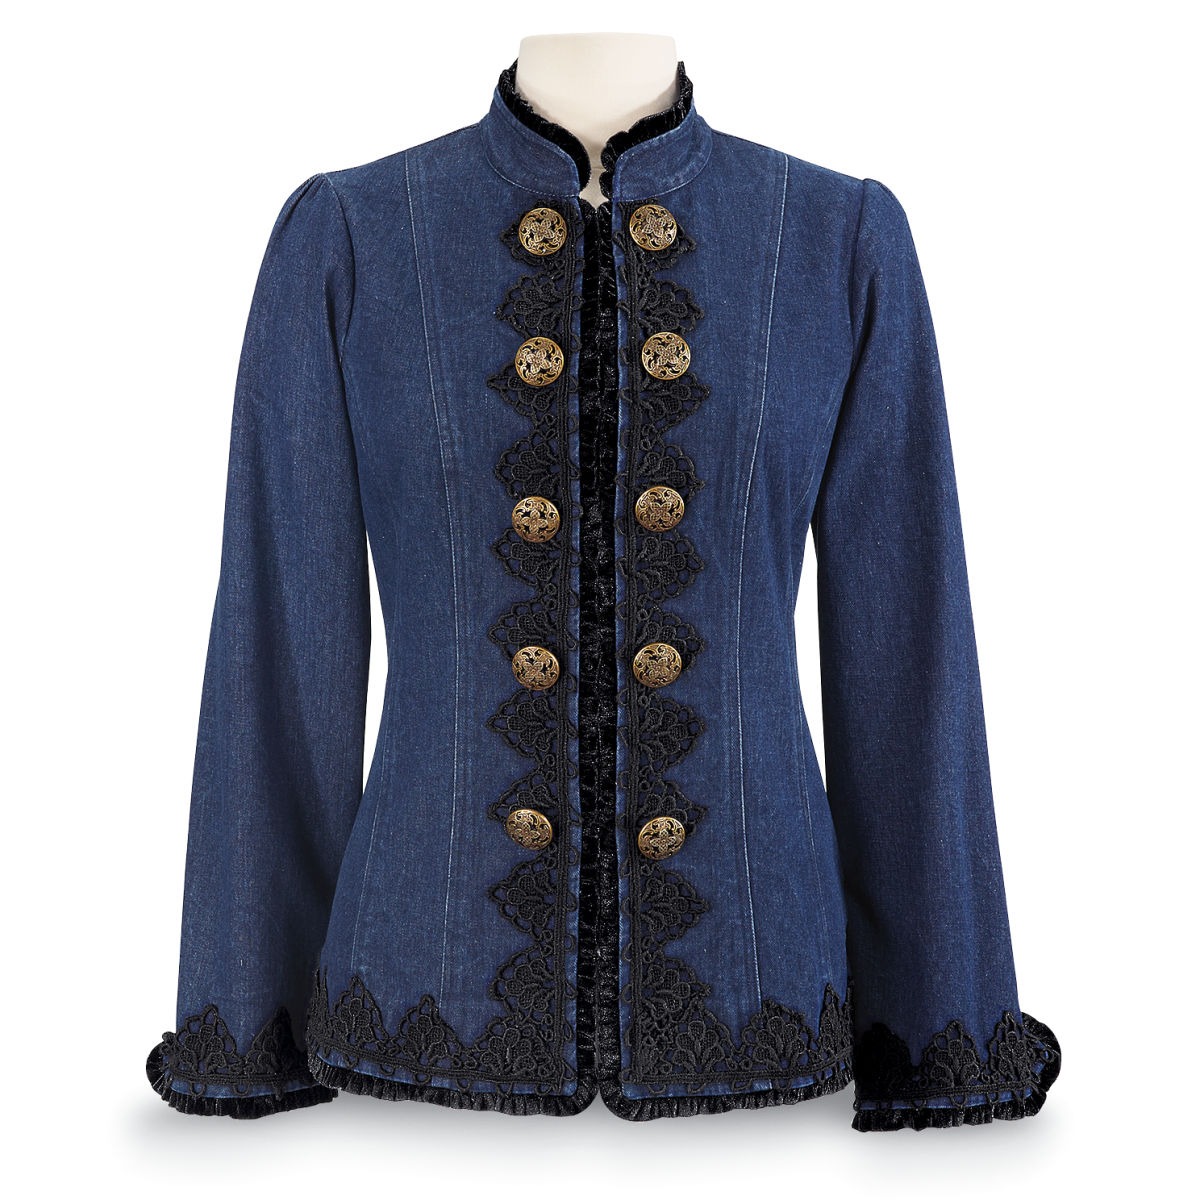 Victorian Denim Jacket steampunk buy now online